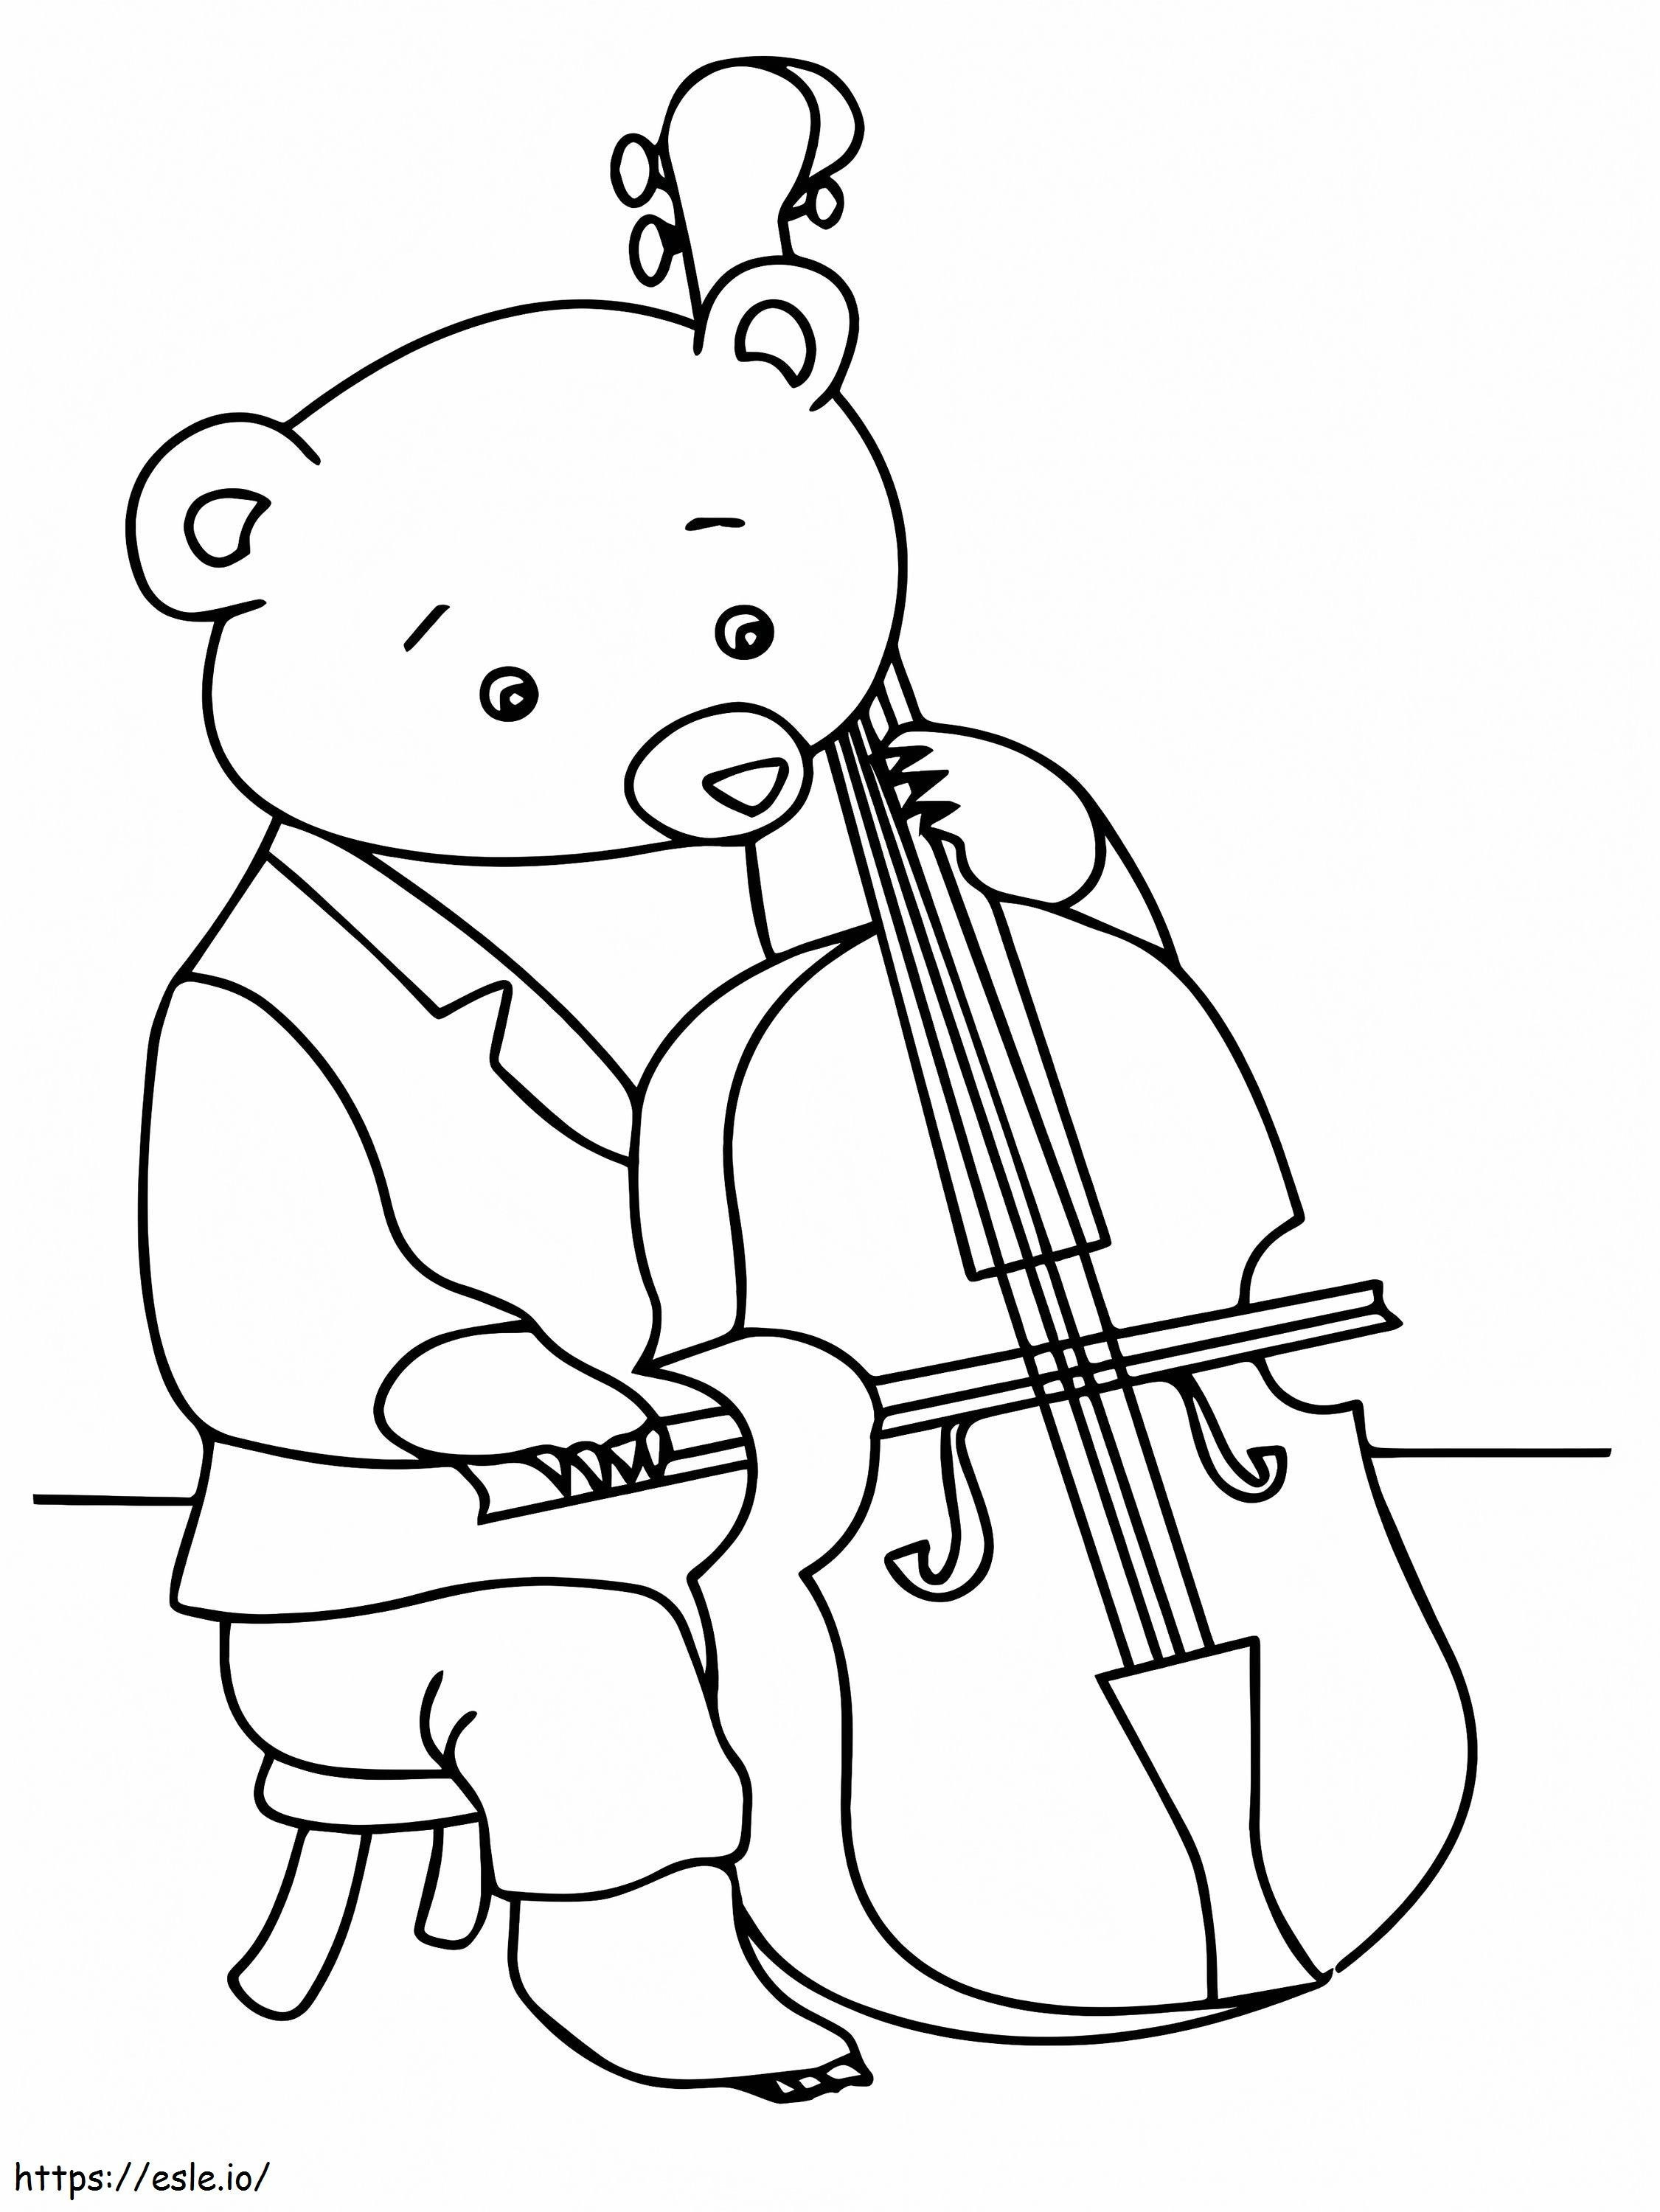 Bär spielt Cello ausmalbilder